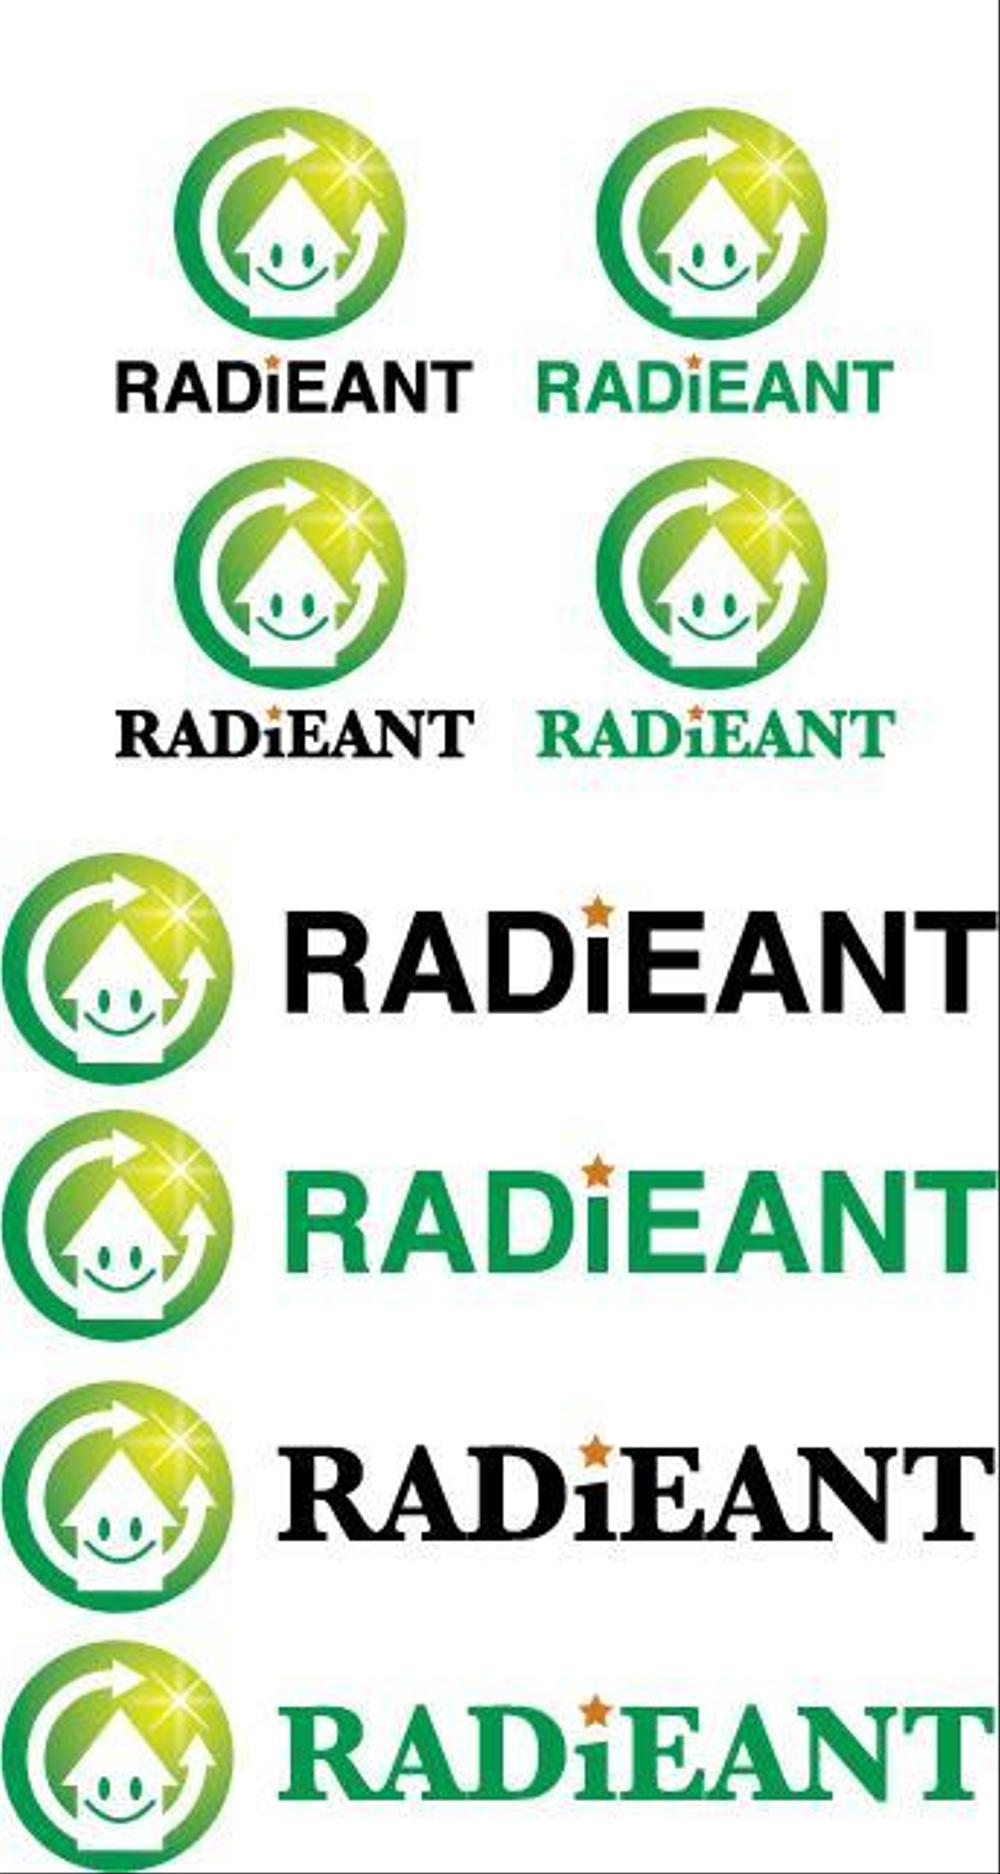 radiant2.jpg